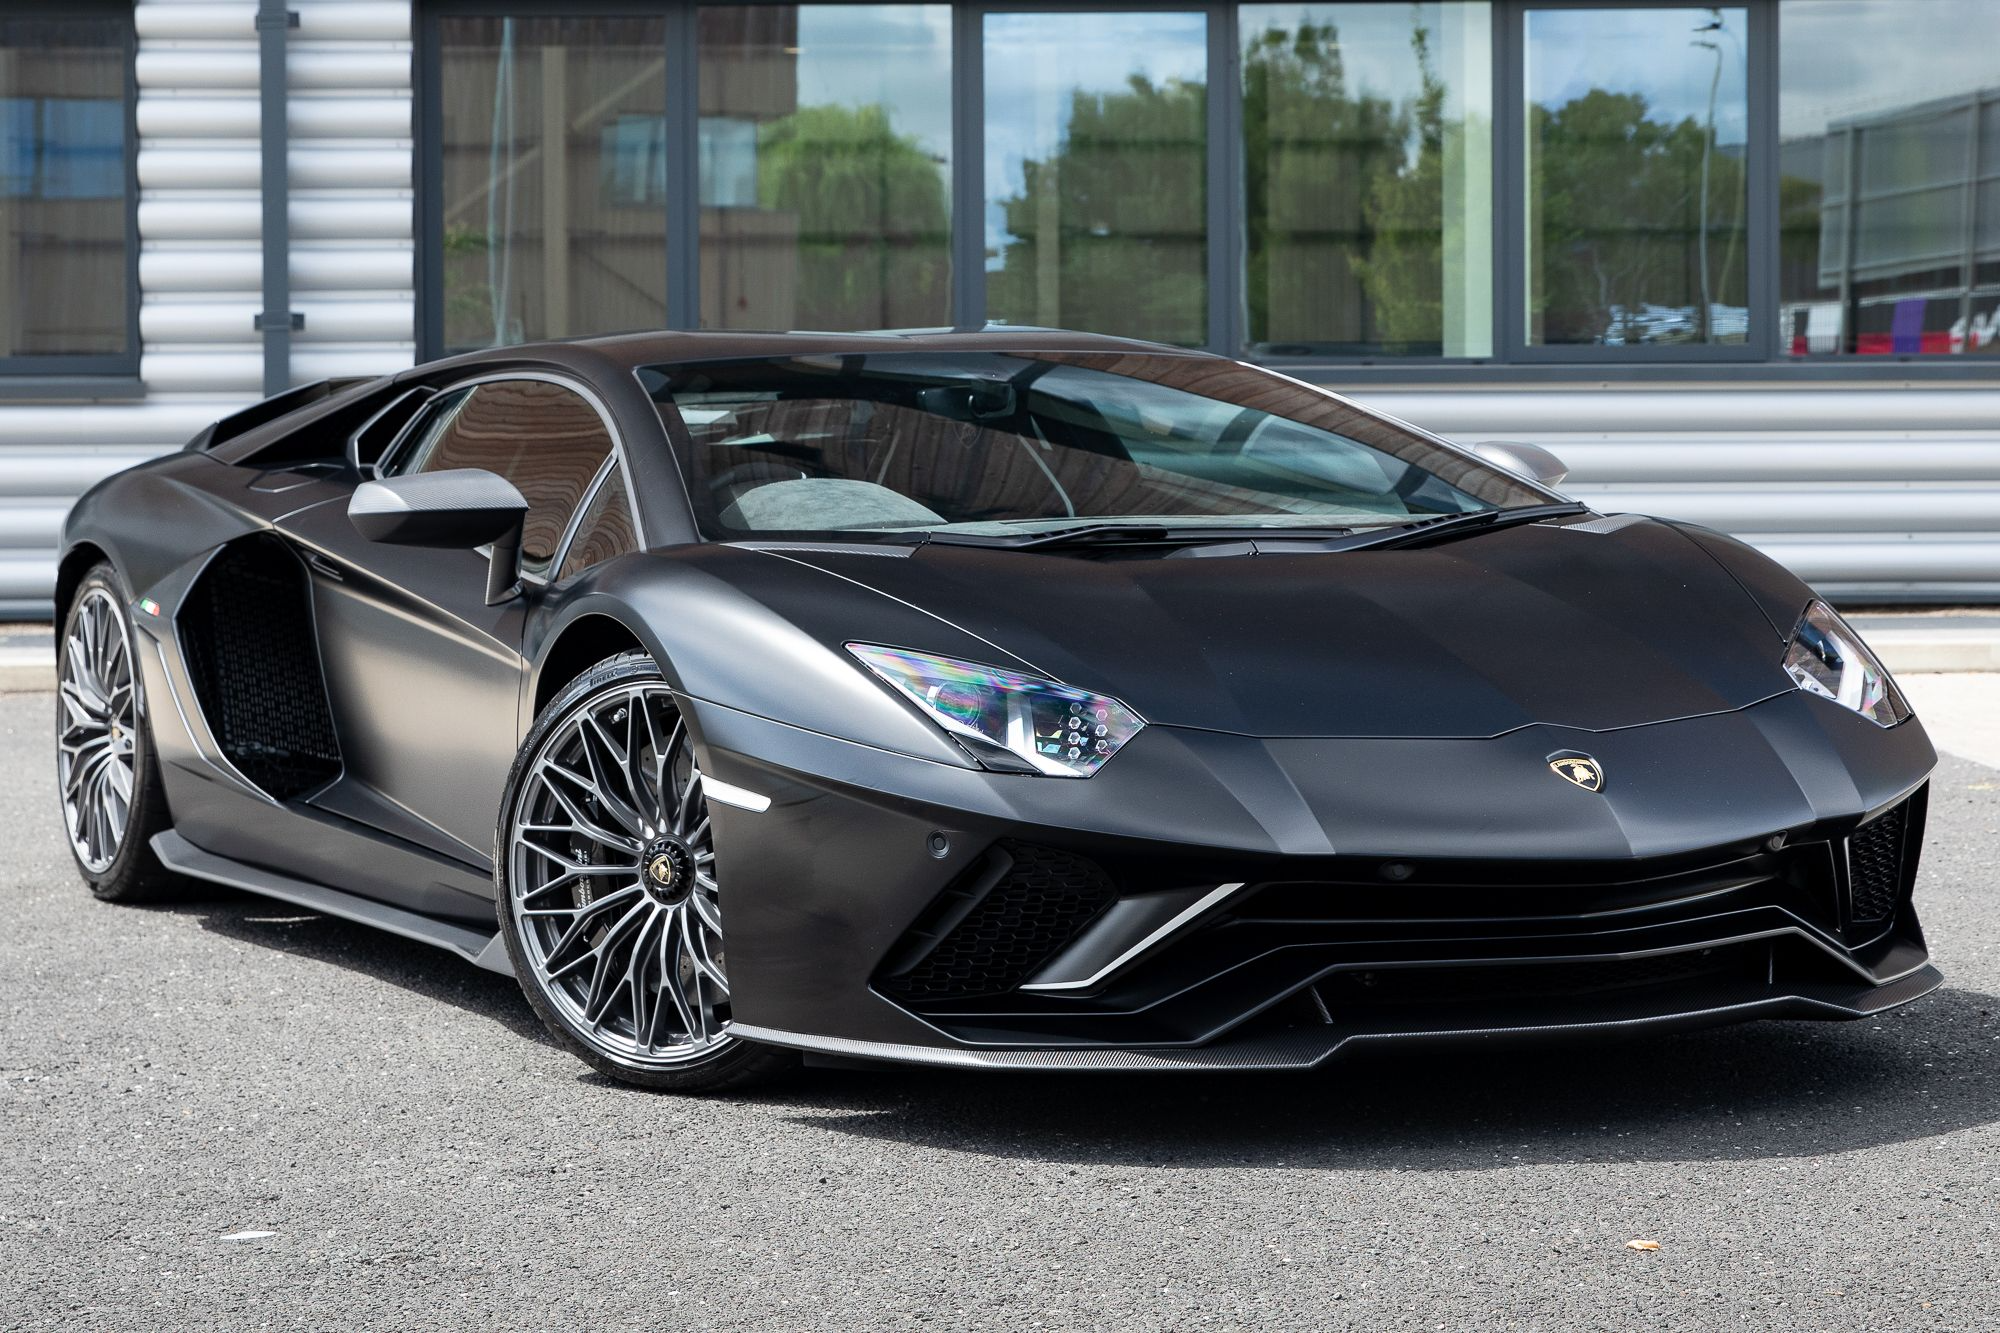 Dono da PixBet adquire Lamborghini avaliada em mais de R$ 8 milhões